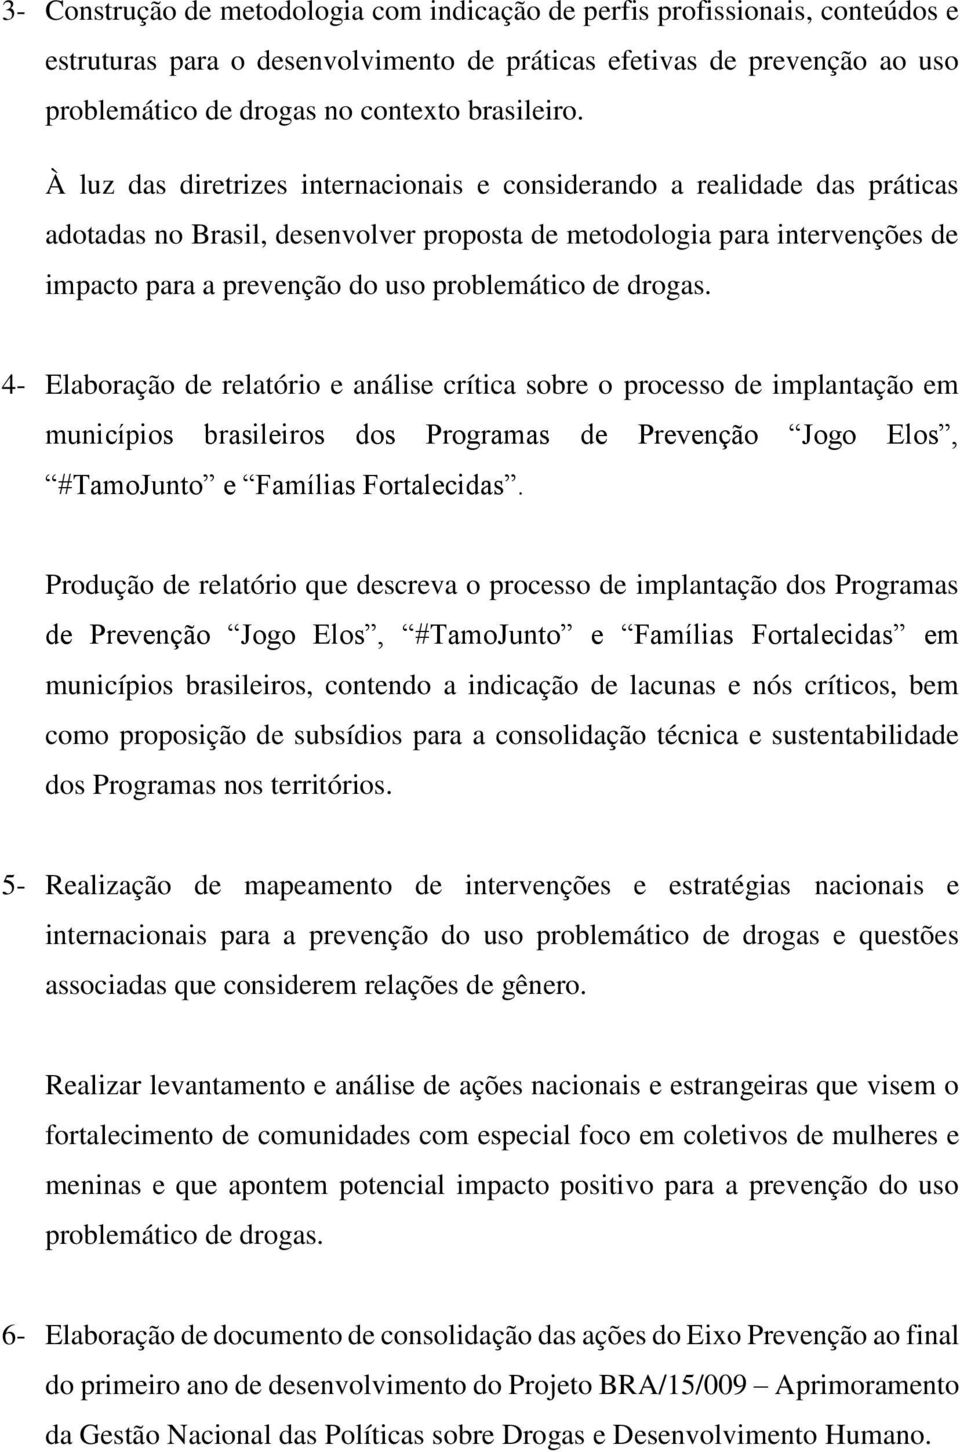 À luz das diretrizes internacionais e considerando a realidade das práticas adotadas no Brasil, desenvolver proposta de metodologia para intervenções de impacto para a prevenção do uso problemático